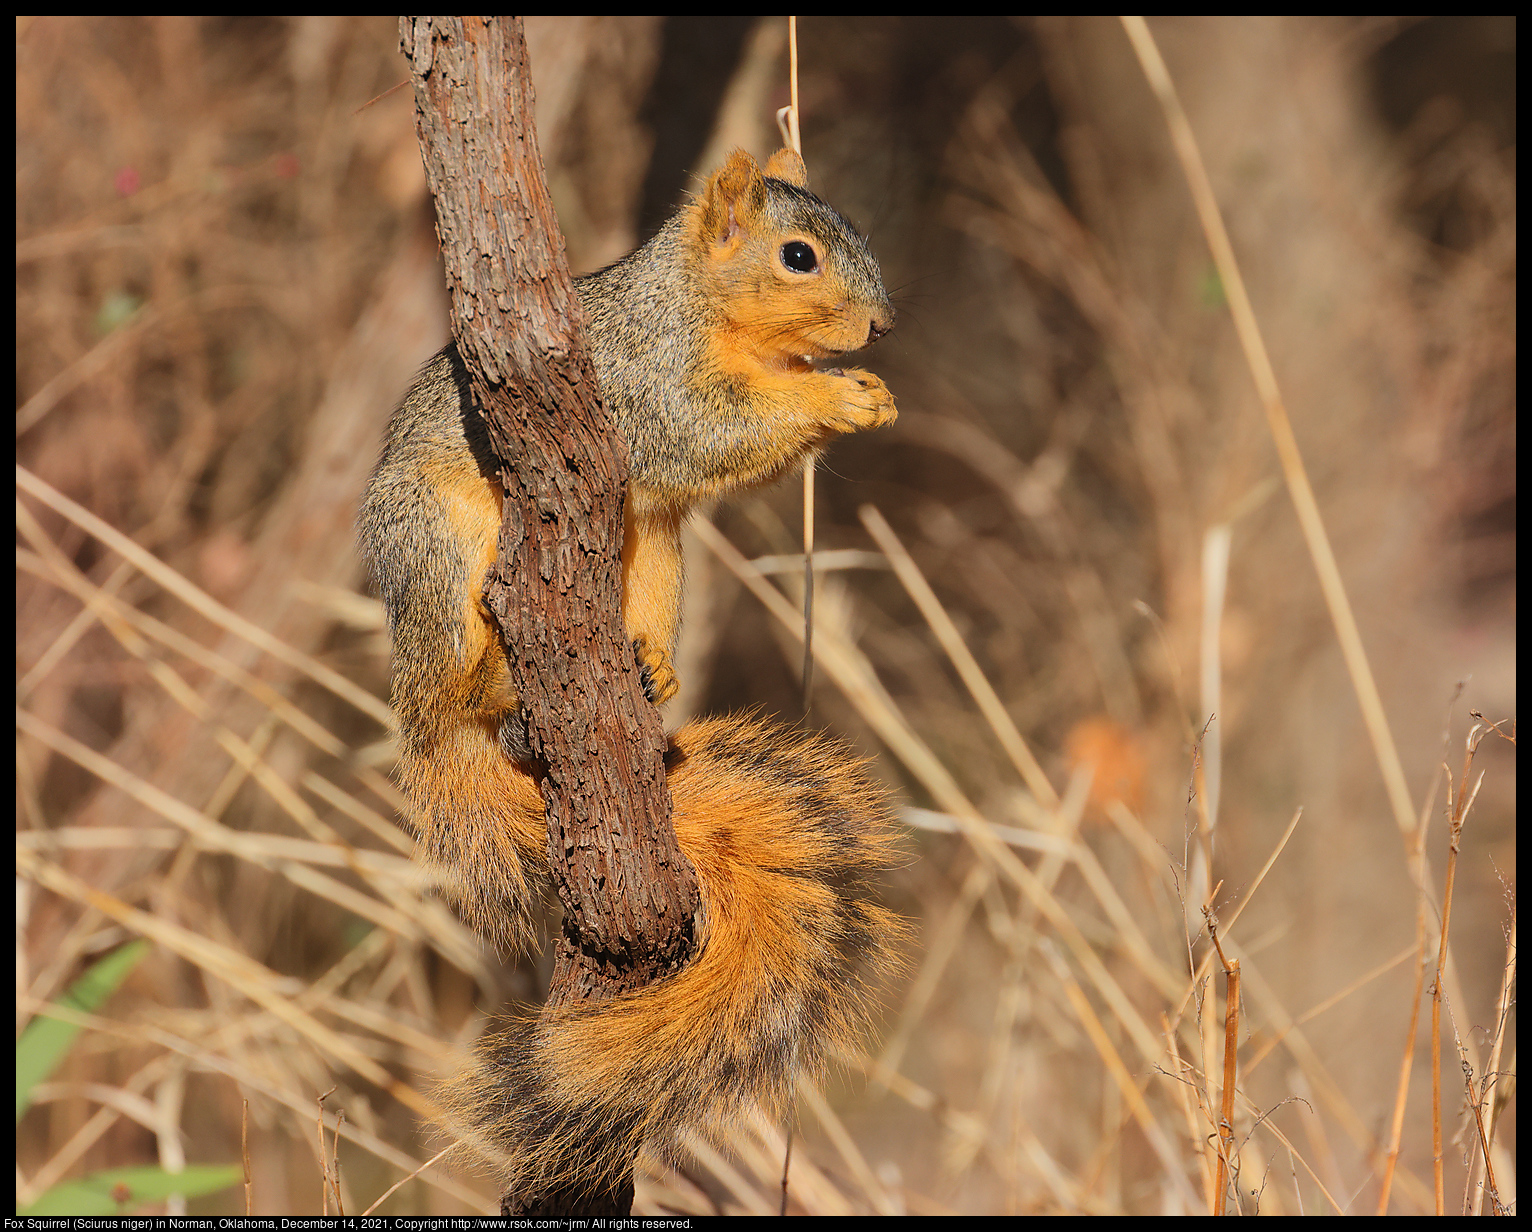 Fox Squirrel (Sciurus niger) in Norman, Oklahoma, December 14, 2021